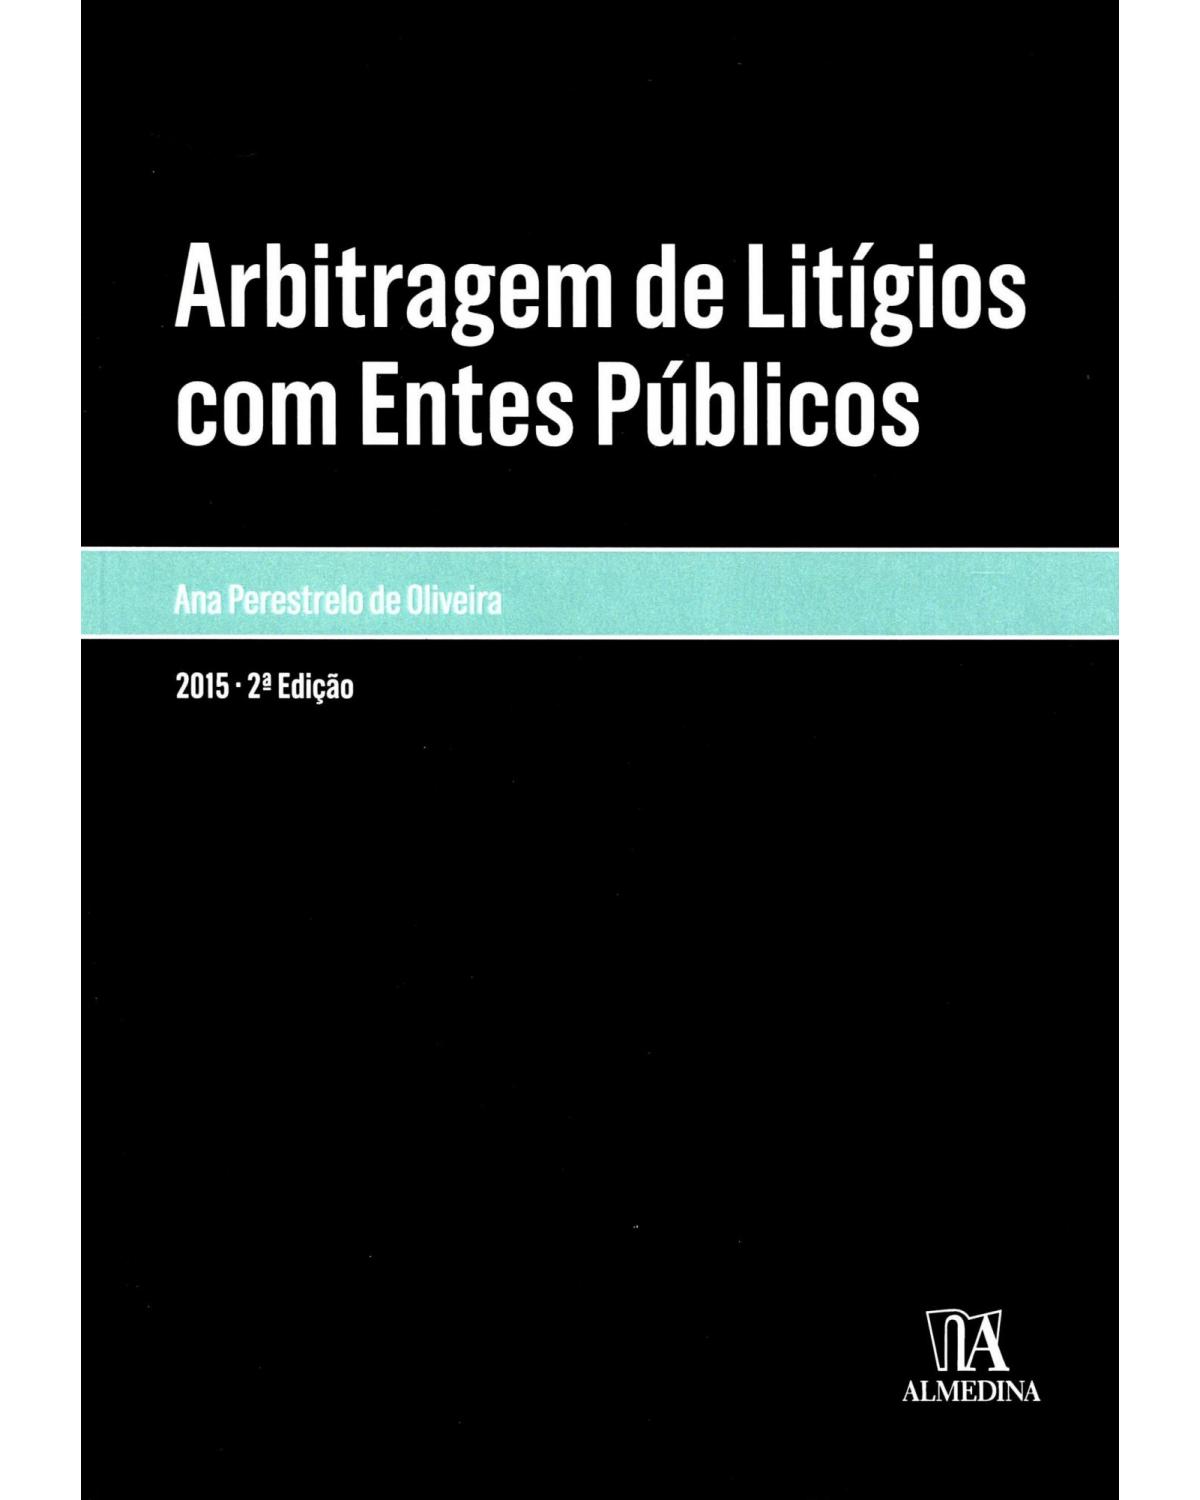 Arbitragem de litígios com entes públicos - 2ª Edição | 2015